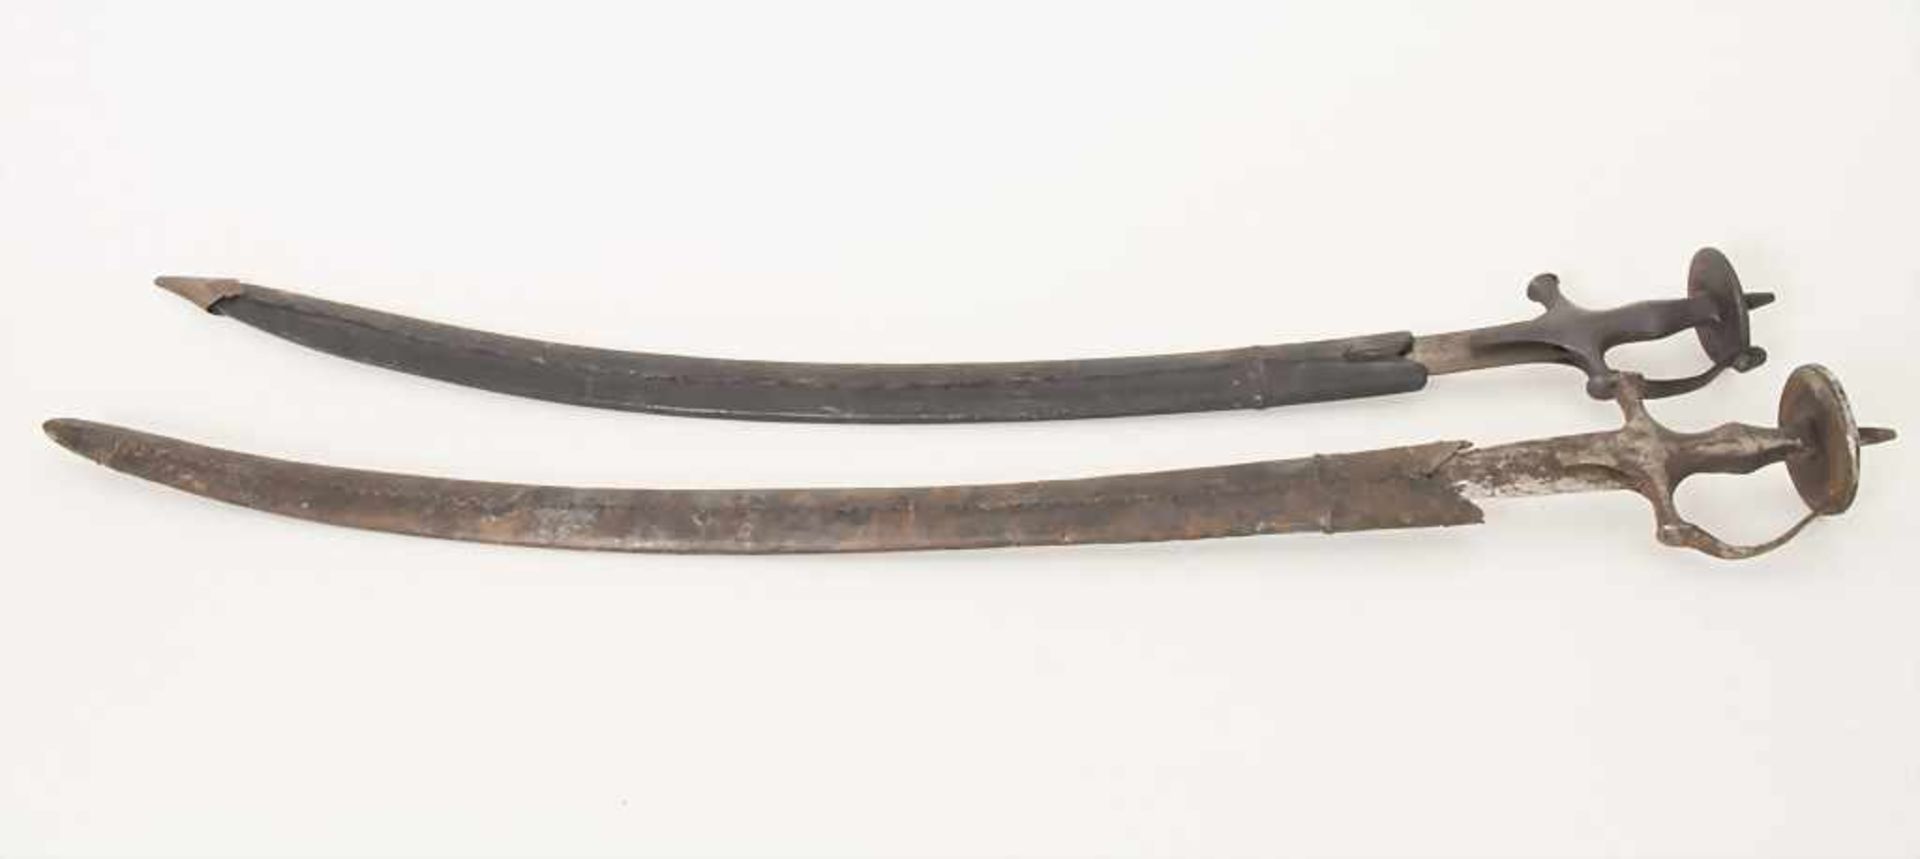 2 Säbel / A pair of sabers, wohl osmanisch, 18./19.Jh.Material: Klingen und Griff aus Schmiedeeisen, - Image 4 of 6